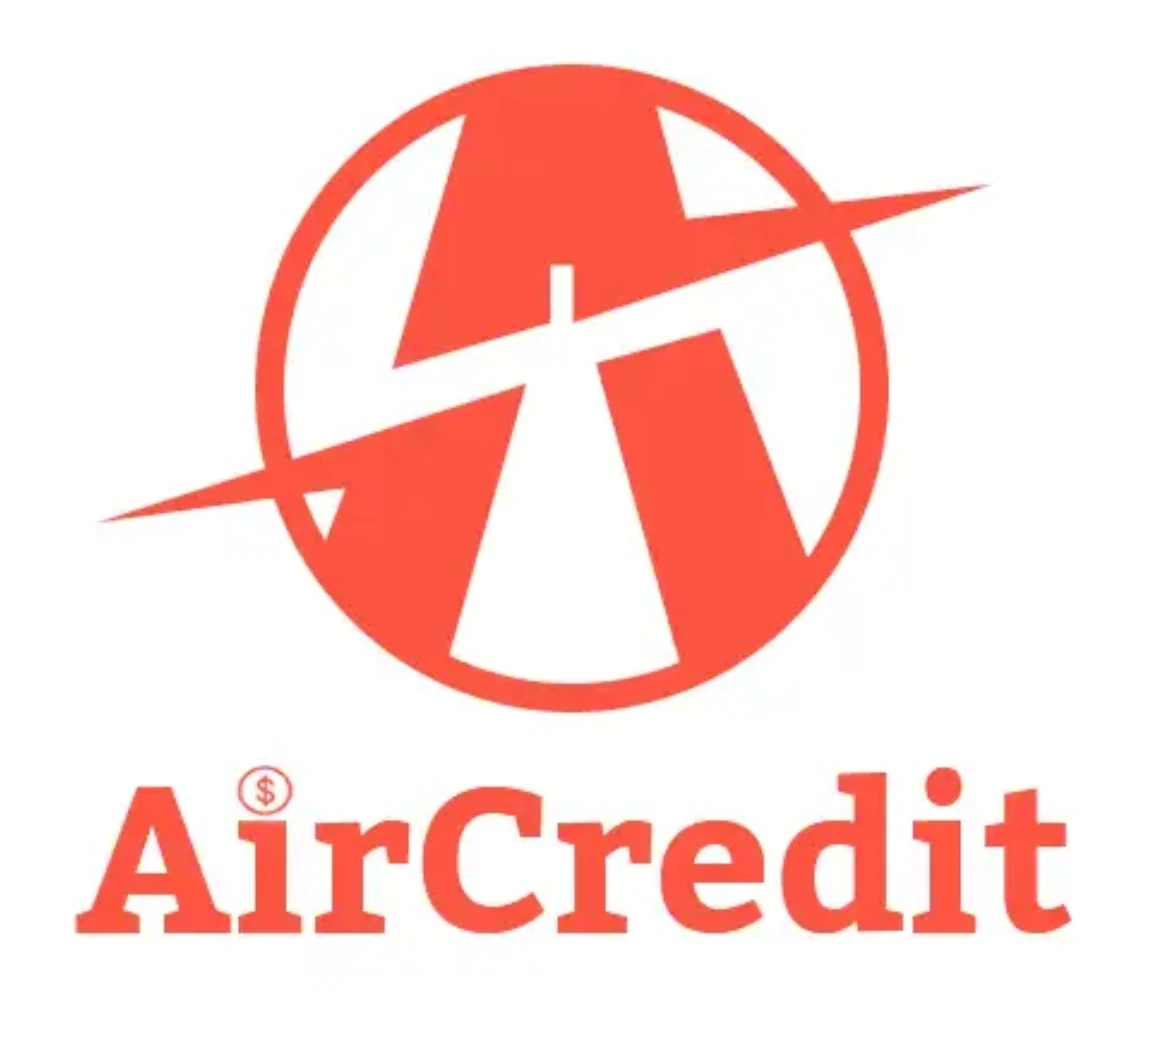 Air Credit loan app